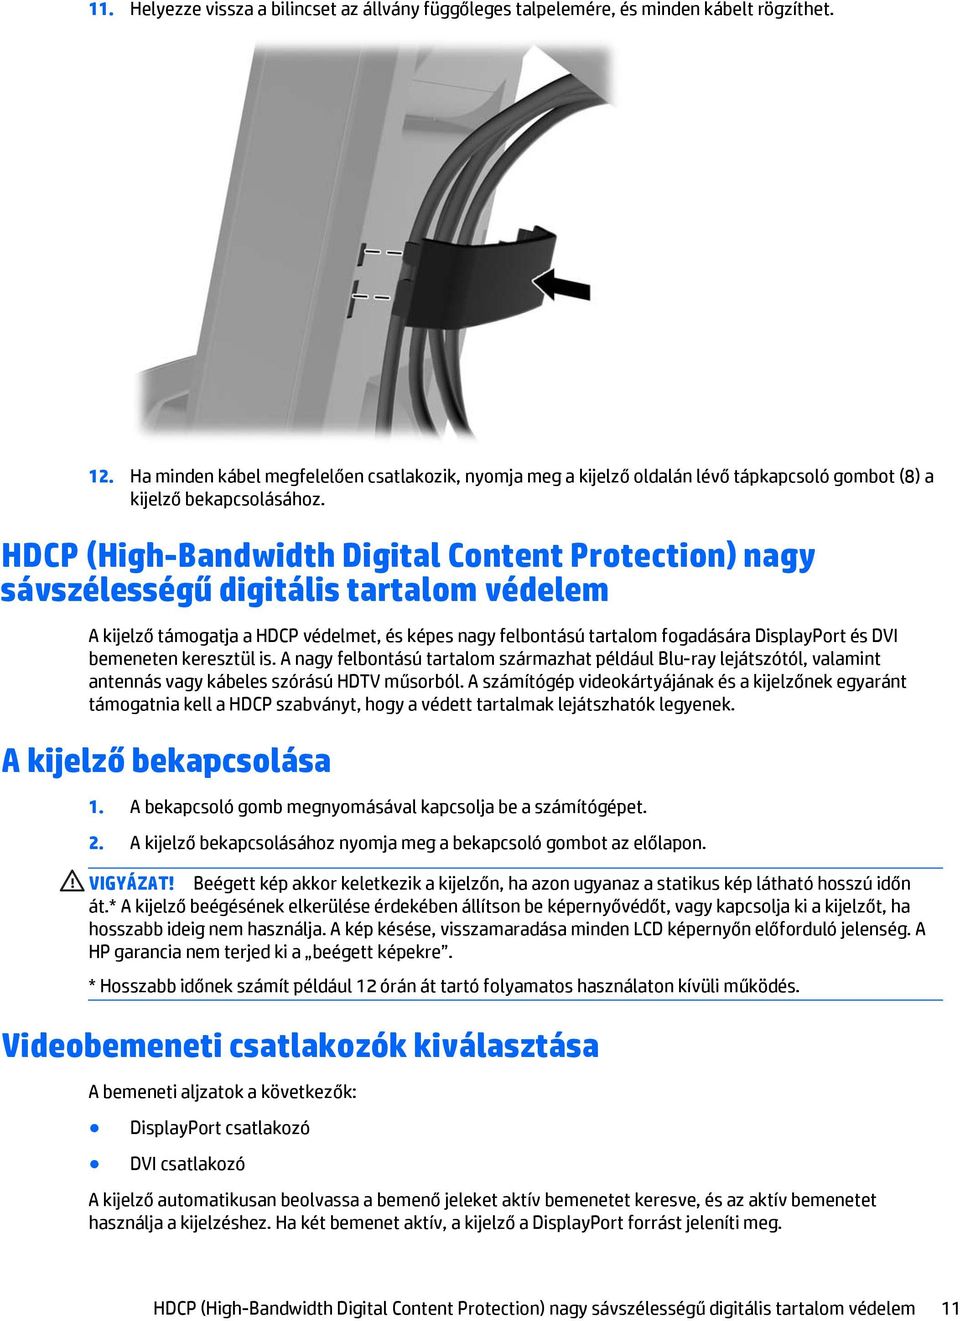 HDCP (High-Bandwidth Digital Content Protection) nagy sávszélességű digitális tartalom védelem A kijelző támogatja a HDCP védelmet, és képes nagy felbontású tartalom fogadására DisplayPort és DVI